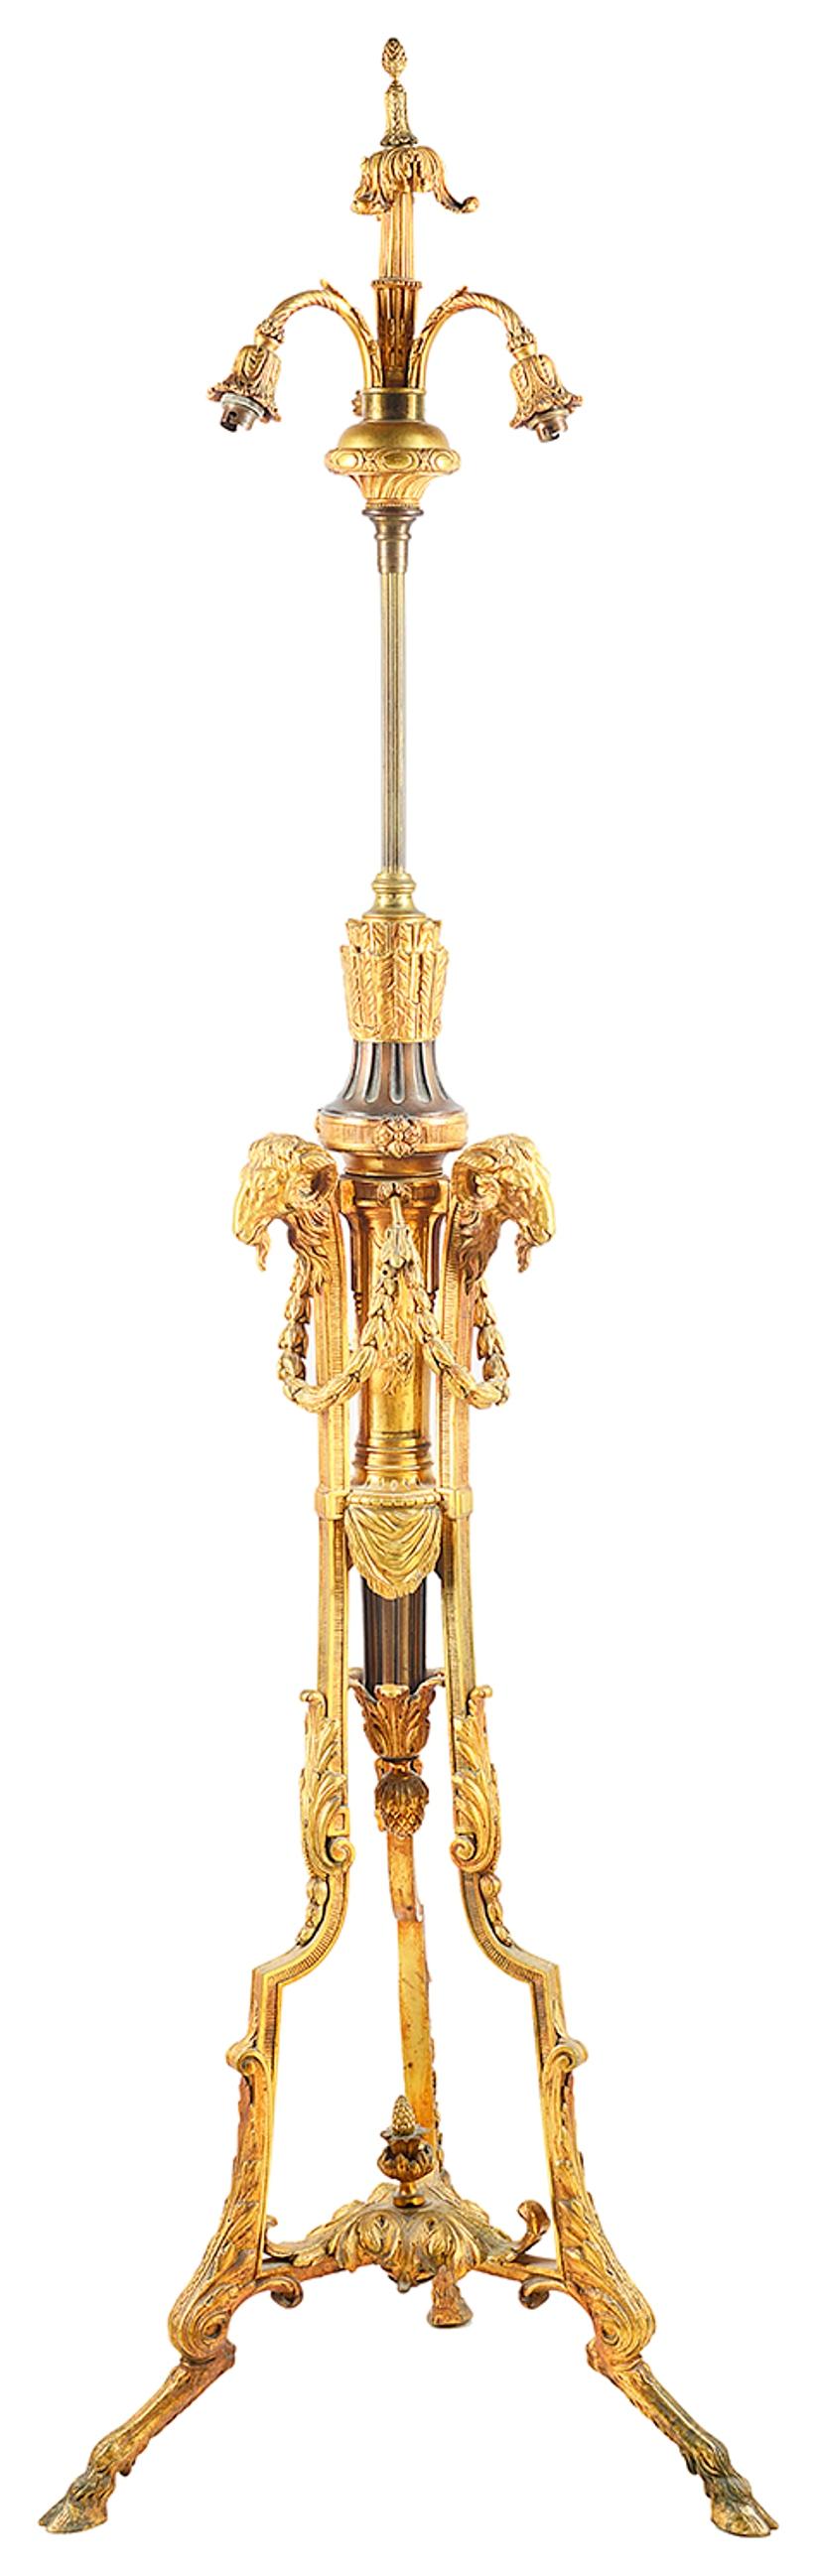 Eine hochwertige Stehlampe aus vergoldetem Ormolu und Bronze aus dem späten 19. Jahrhundert mit Rams-Kopf, Säckchen und Blattwerkbeschlägen, die in Huffüßen enden.